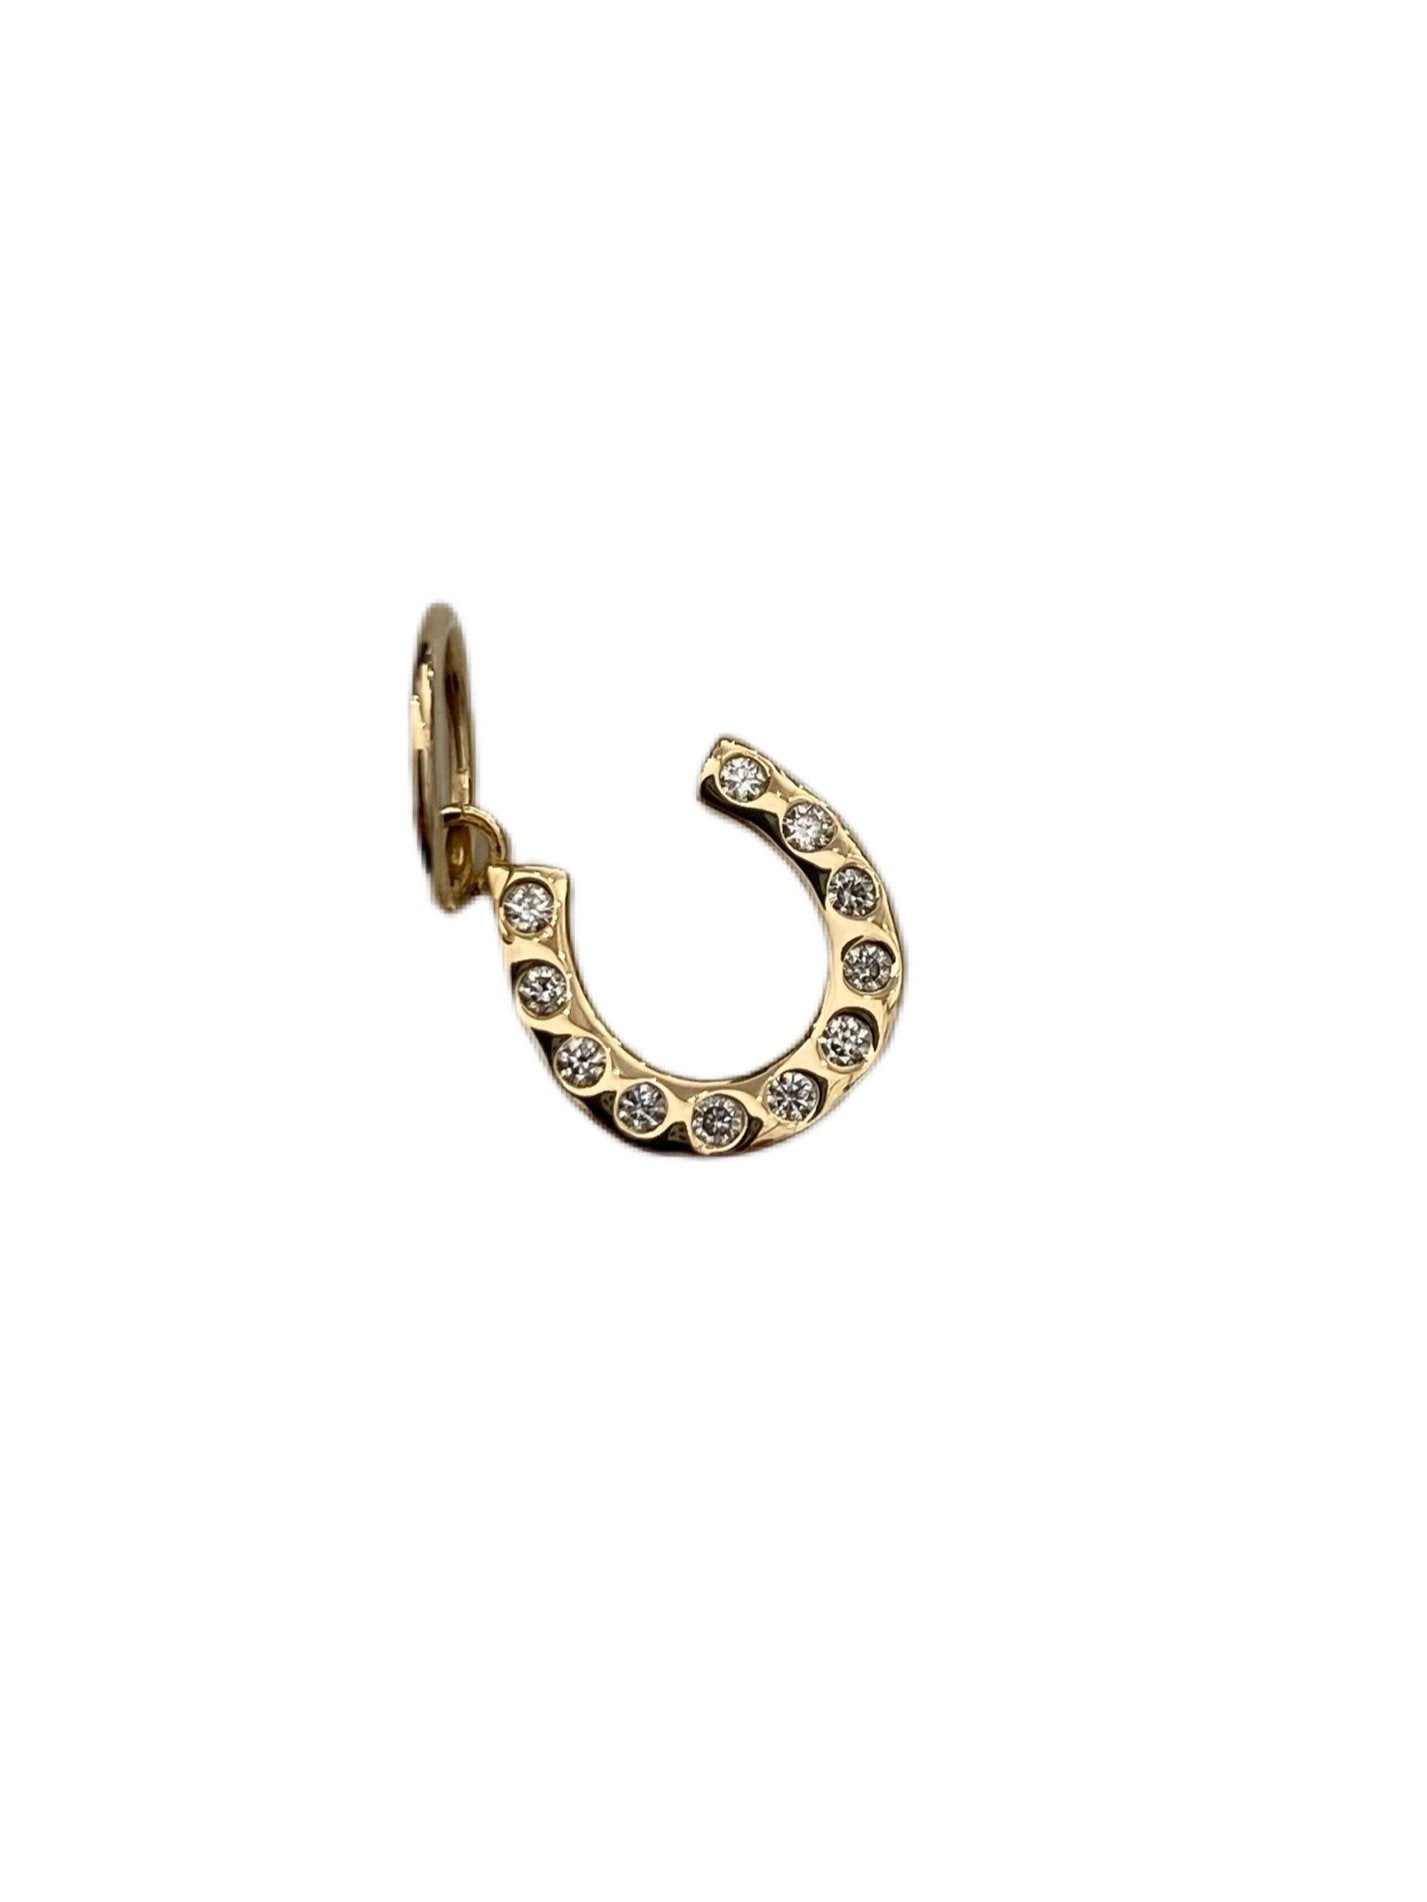 S.Row Designs Diamond horseshoe pendant